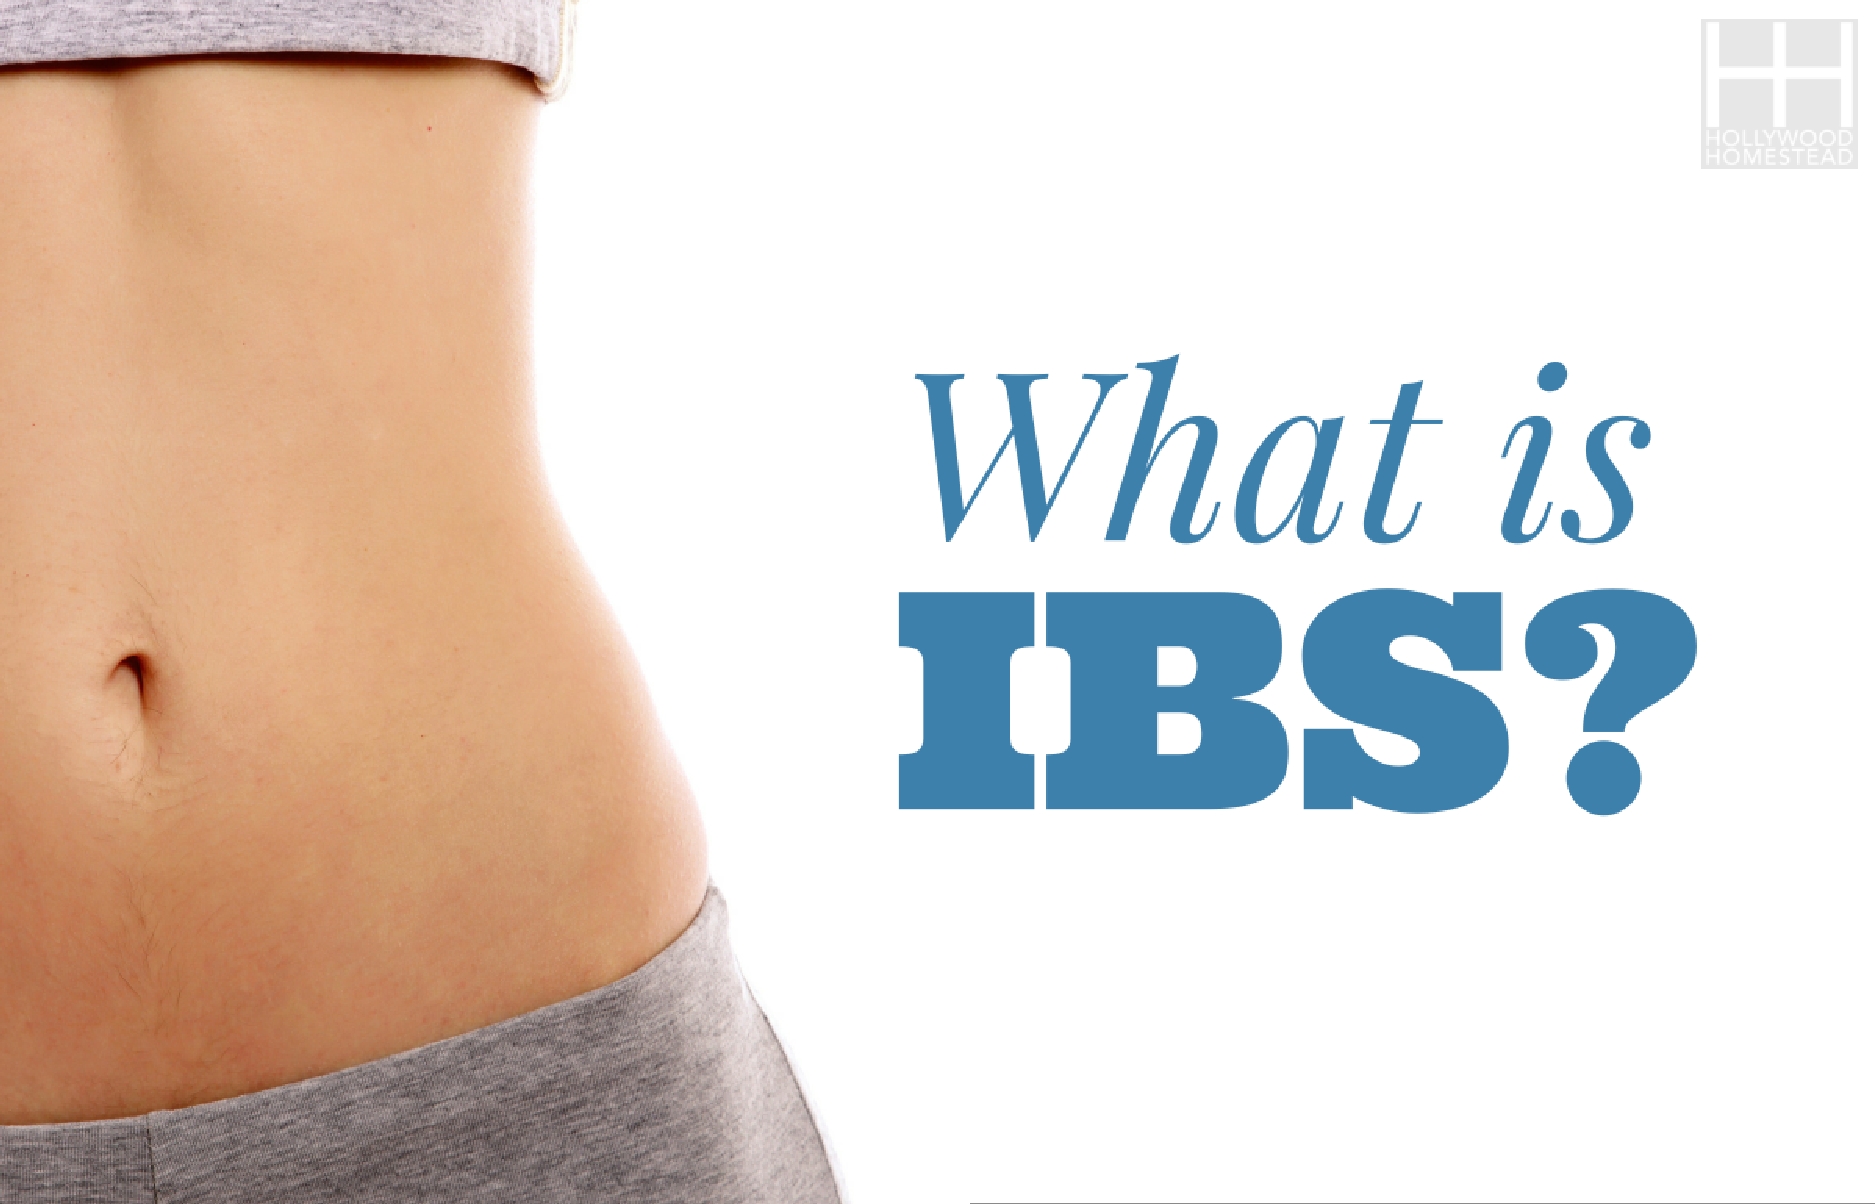 Ibs life. IBS. IBS компания. IBS фото.